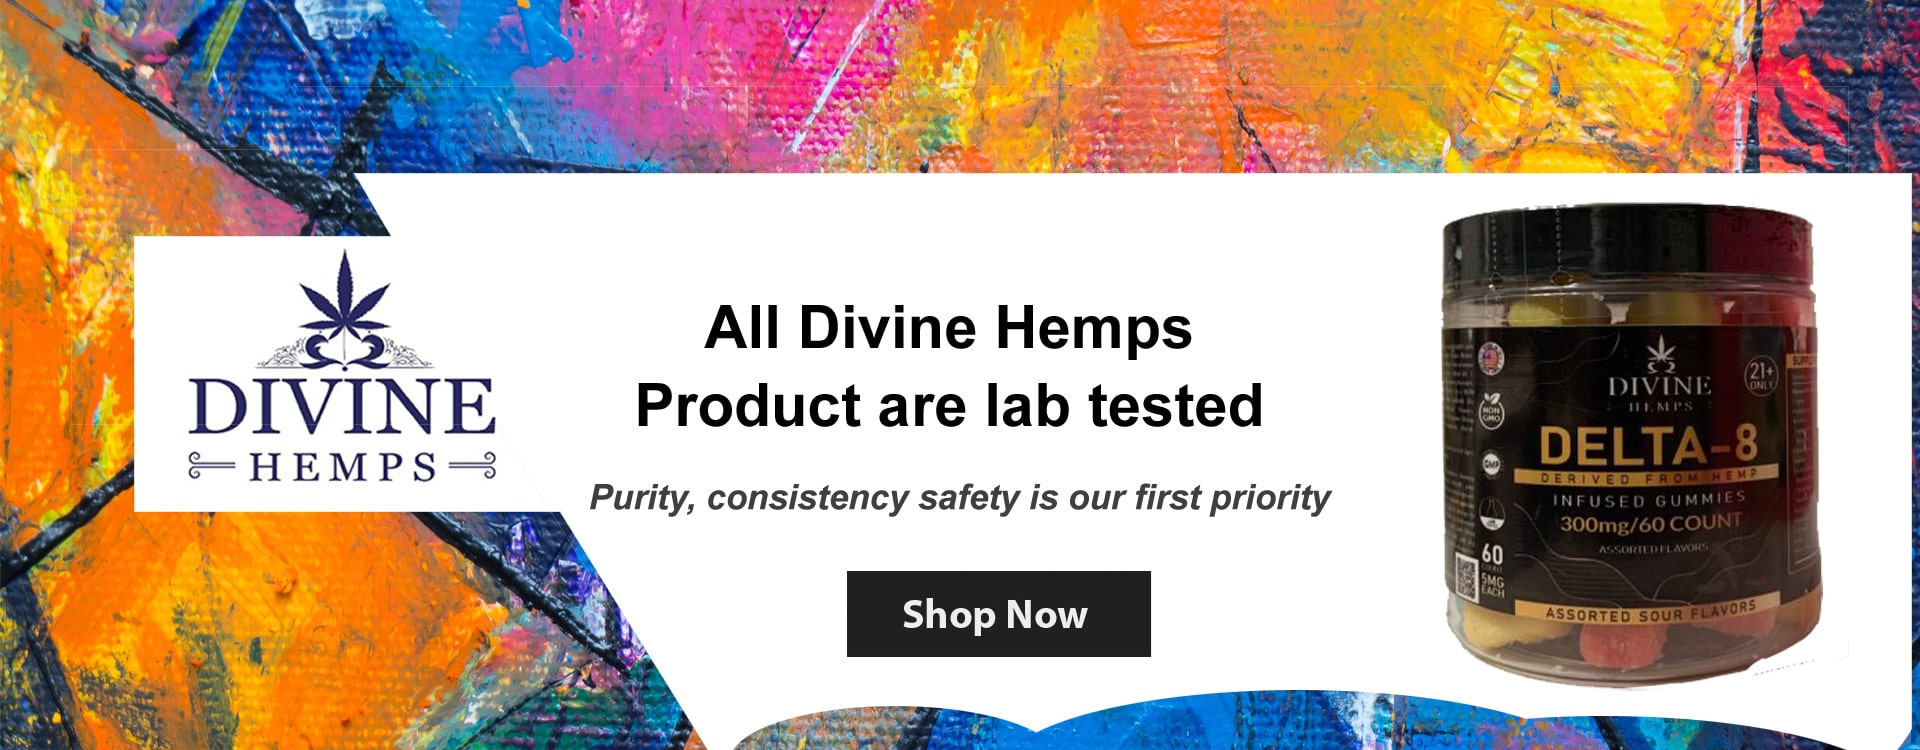 divine hemps products